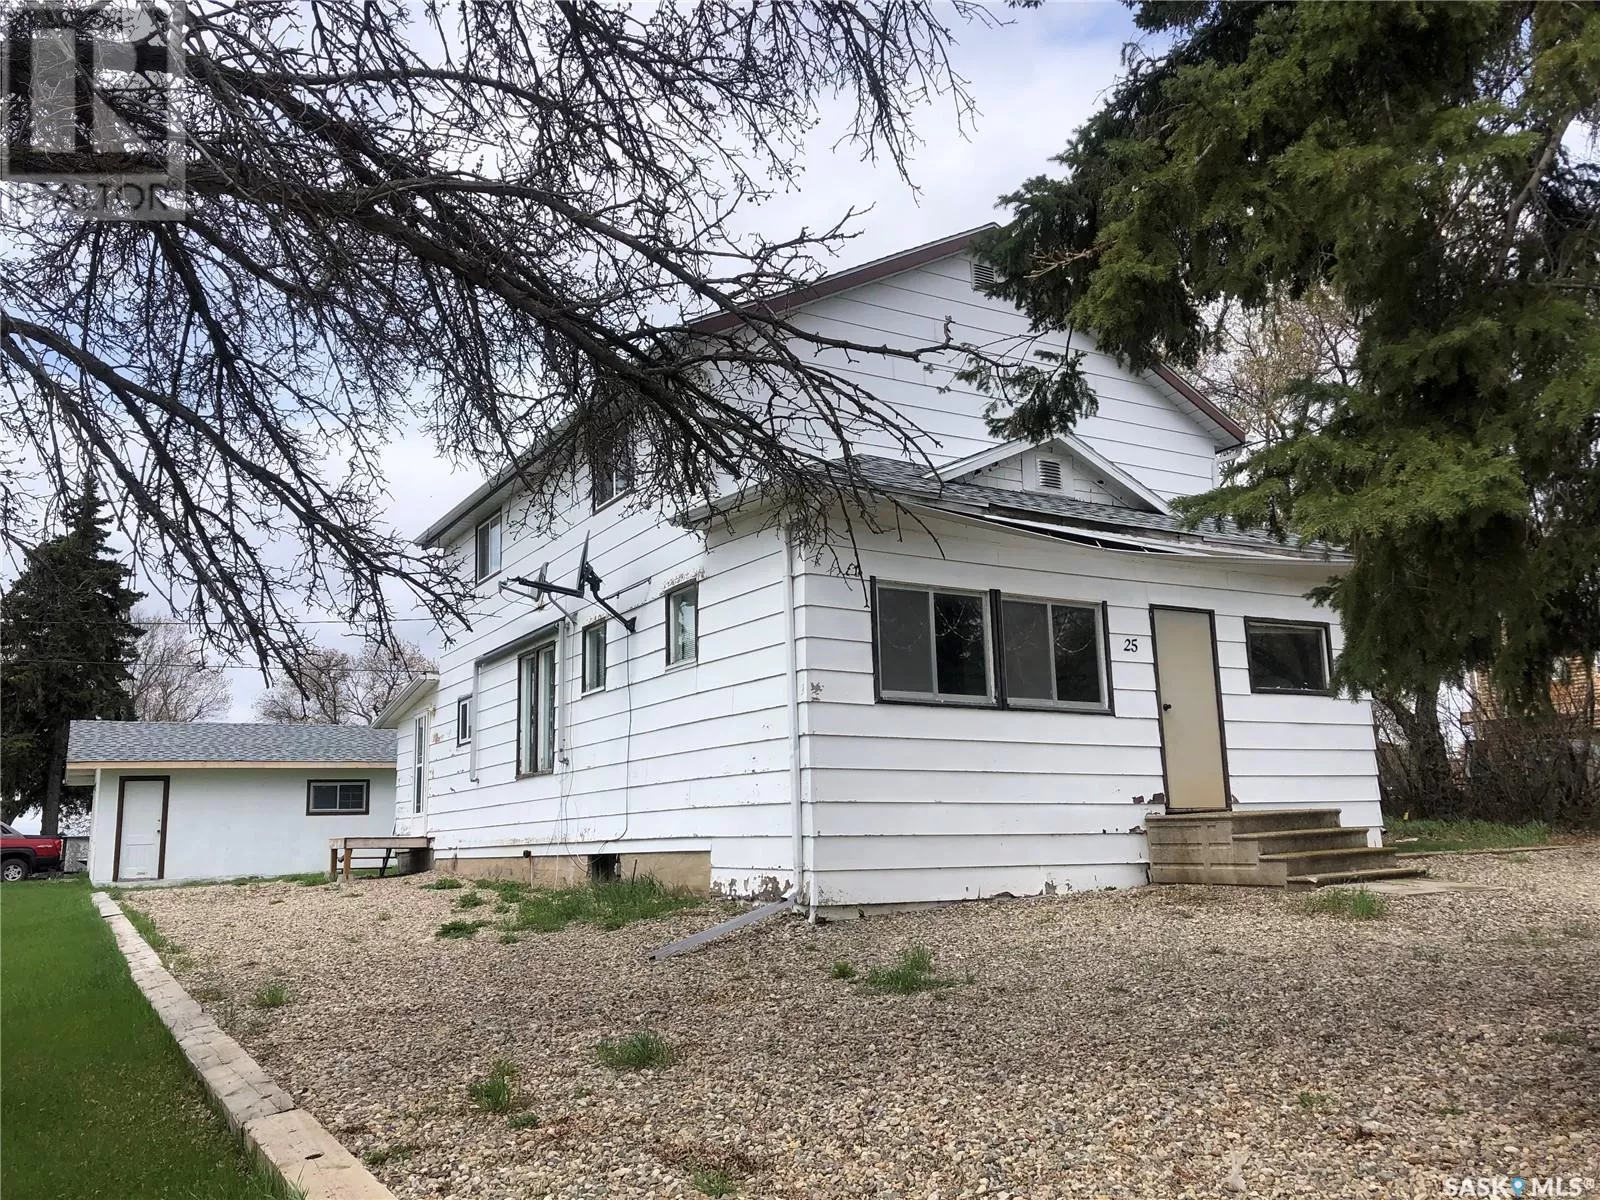 House for rent: 25 Beck Street, Dubuc, Saskatchewan S0A 0R0